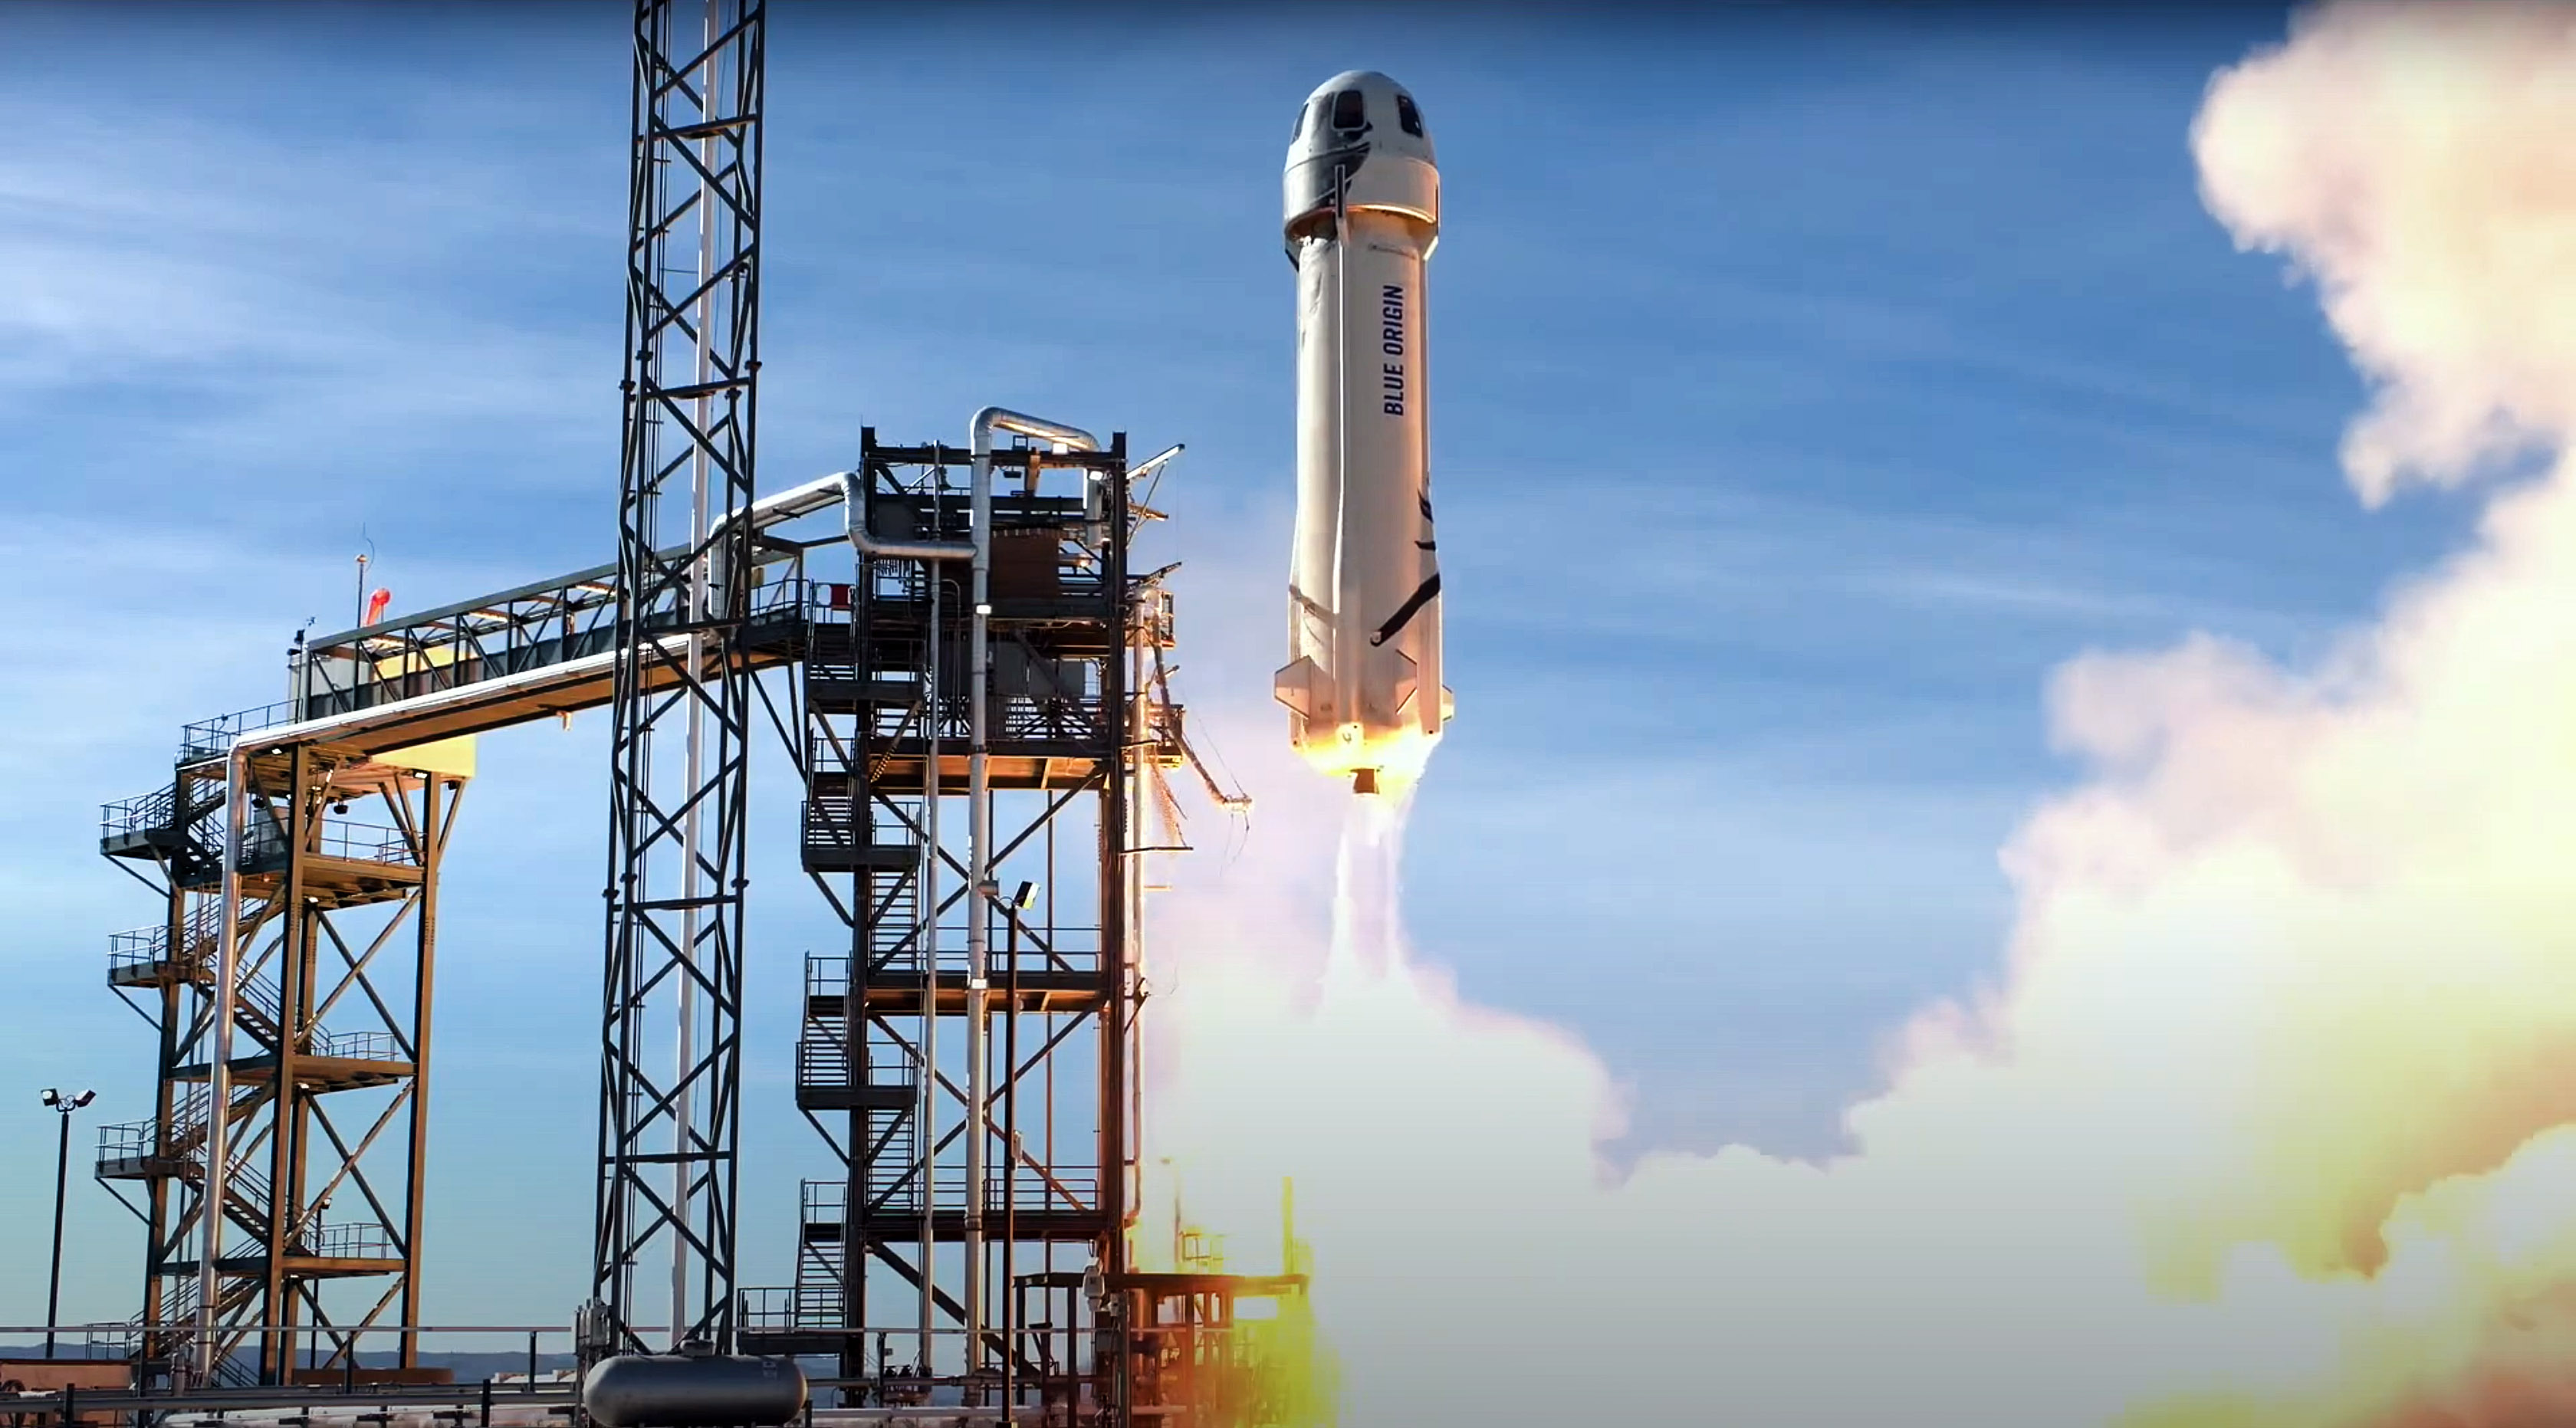 Tune in Wednesday when Jeff Bezos' Blue Origin sends a rocket skyward in  prelude to human flight